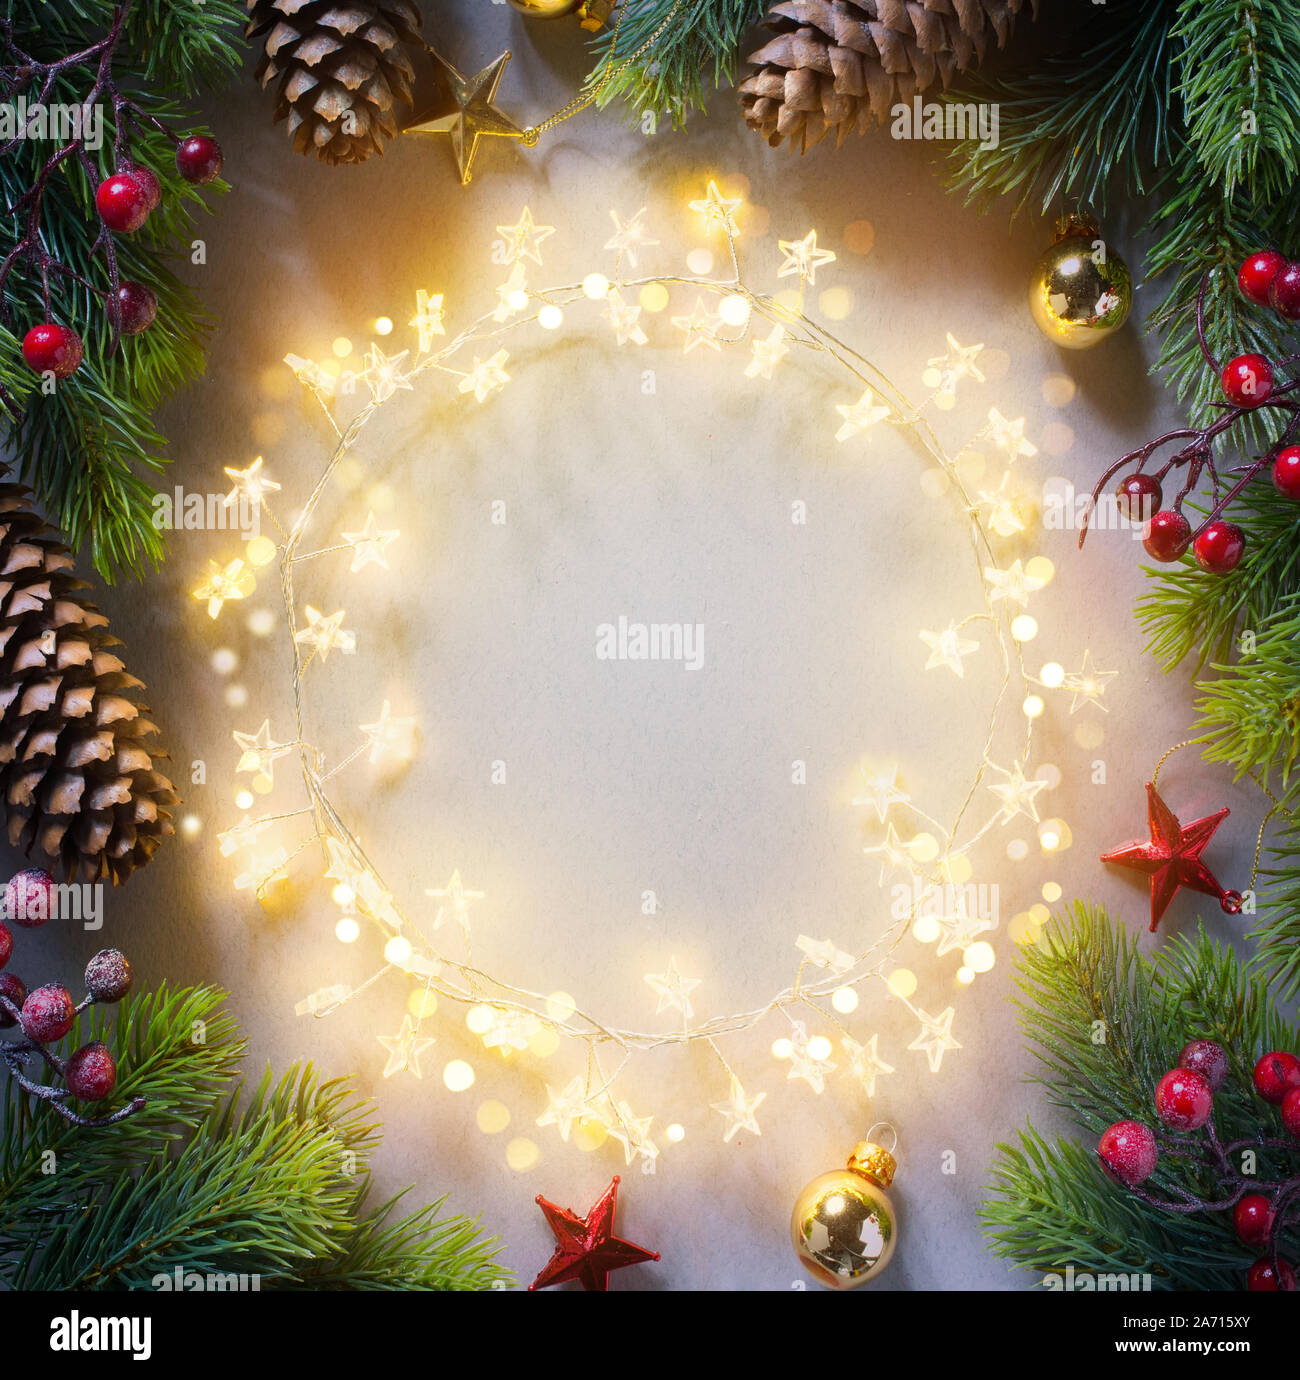 Weihnachtsbaum und Urlaub Lichterkette auf blauem Hintergrund; Frohe Weihnachten und ein glückliches Neues Jahr Grußkarte oder Holiday banner Stockfoto